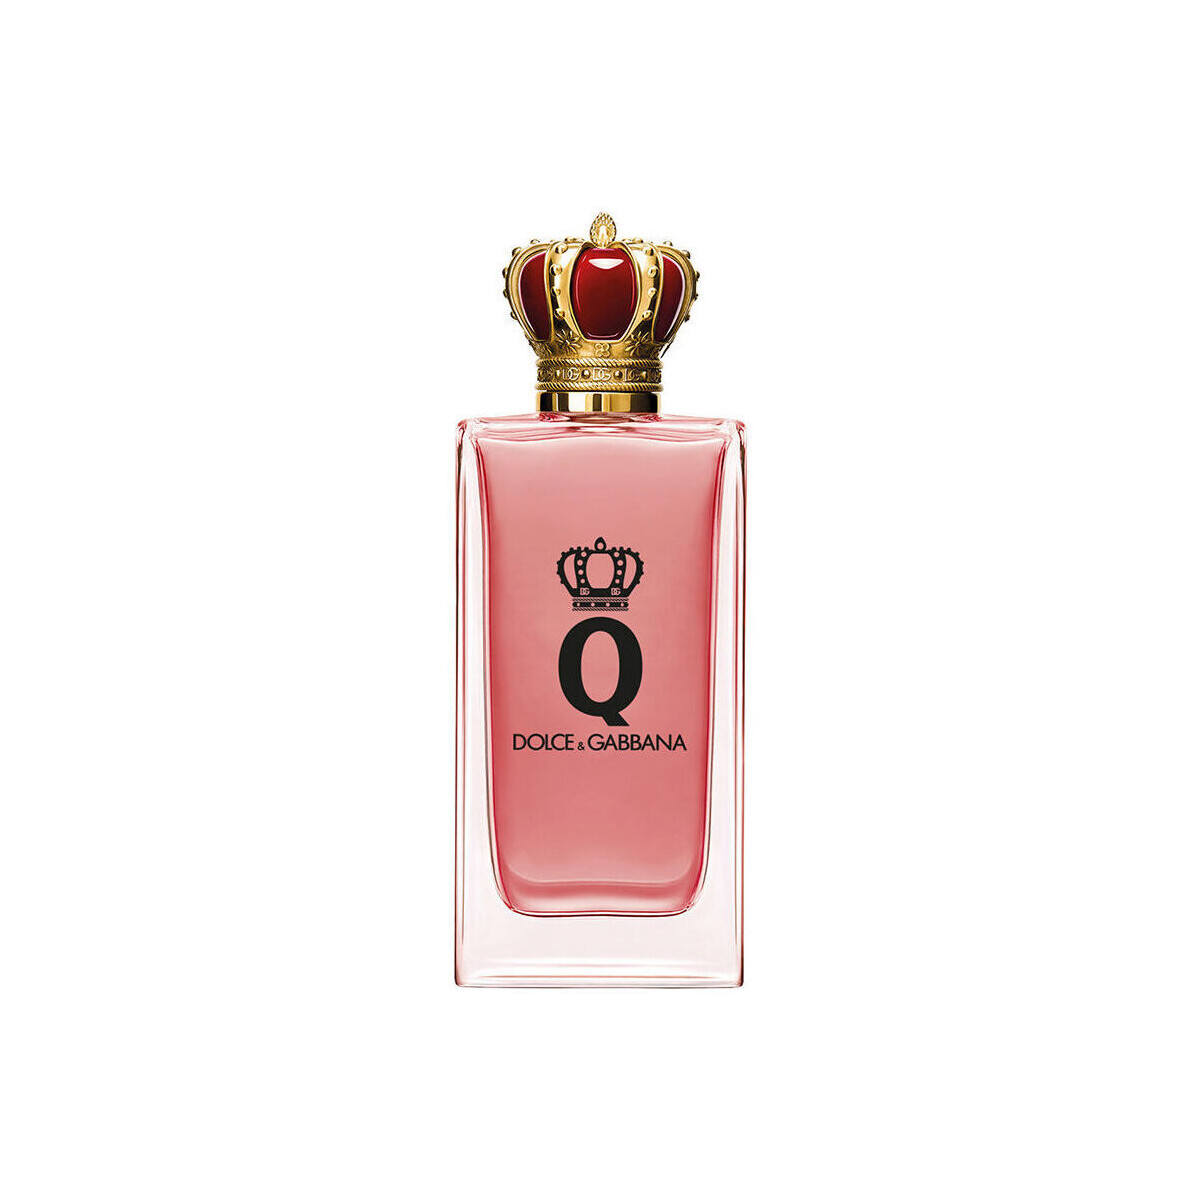 Beauty Damen Eau de parfum  D&G Q By Dolce & Gabbana Intense Intensiver Edp-dampf 